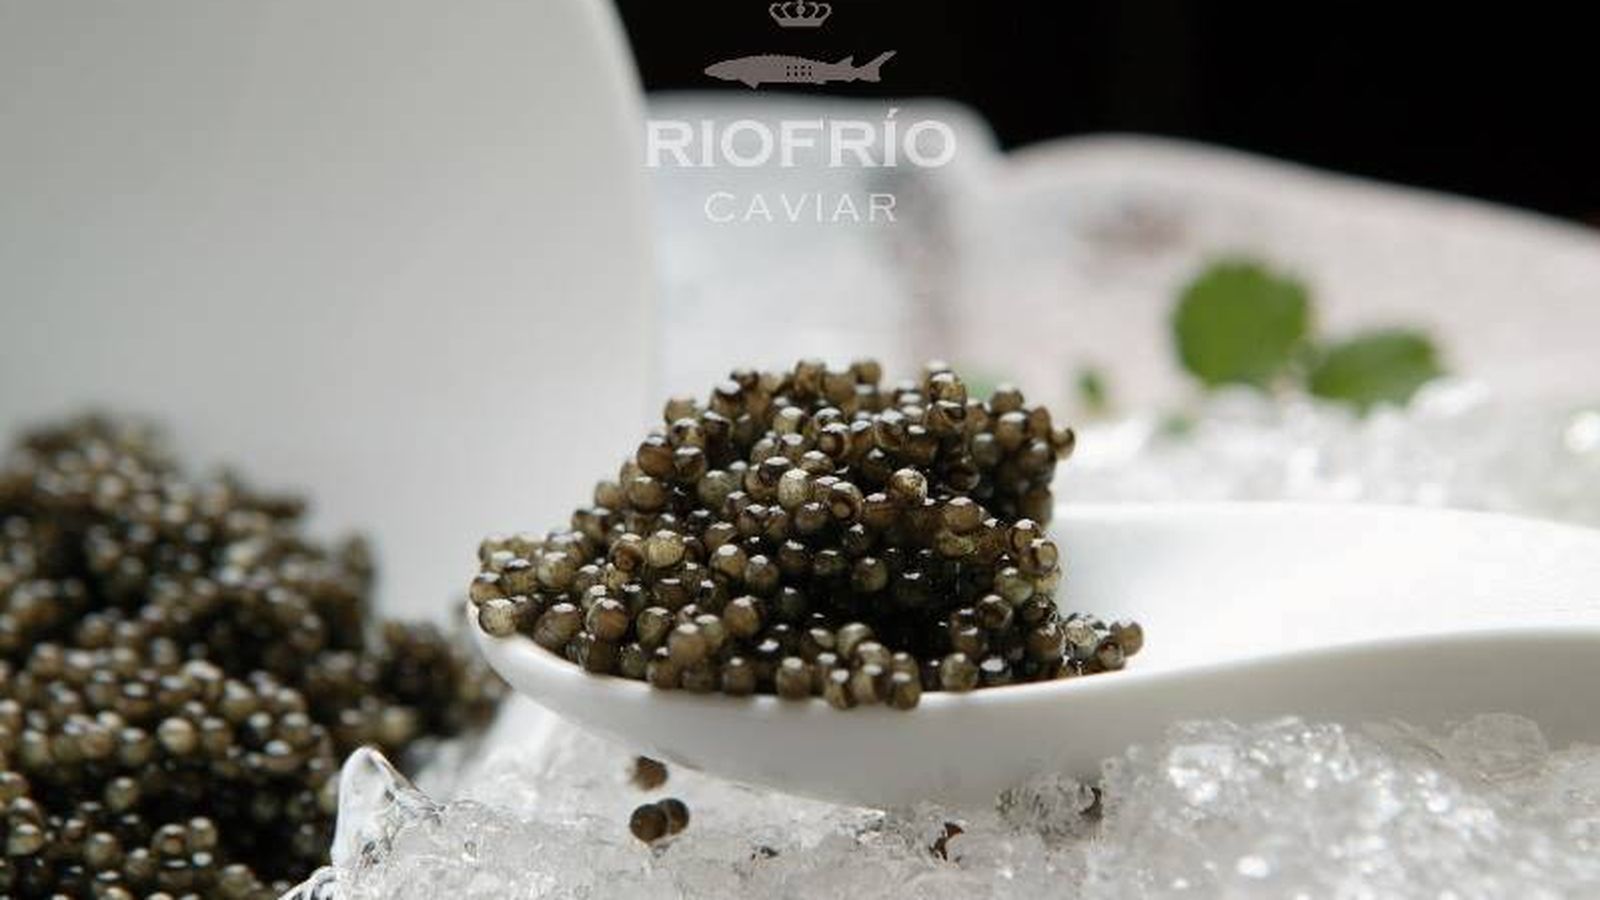 Foto: Caviar, un manjar.